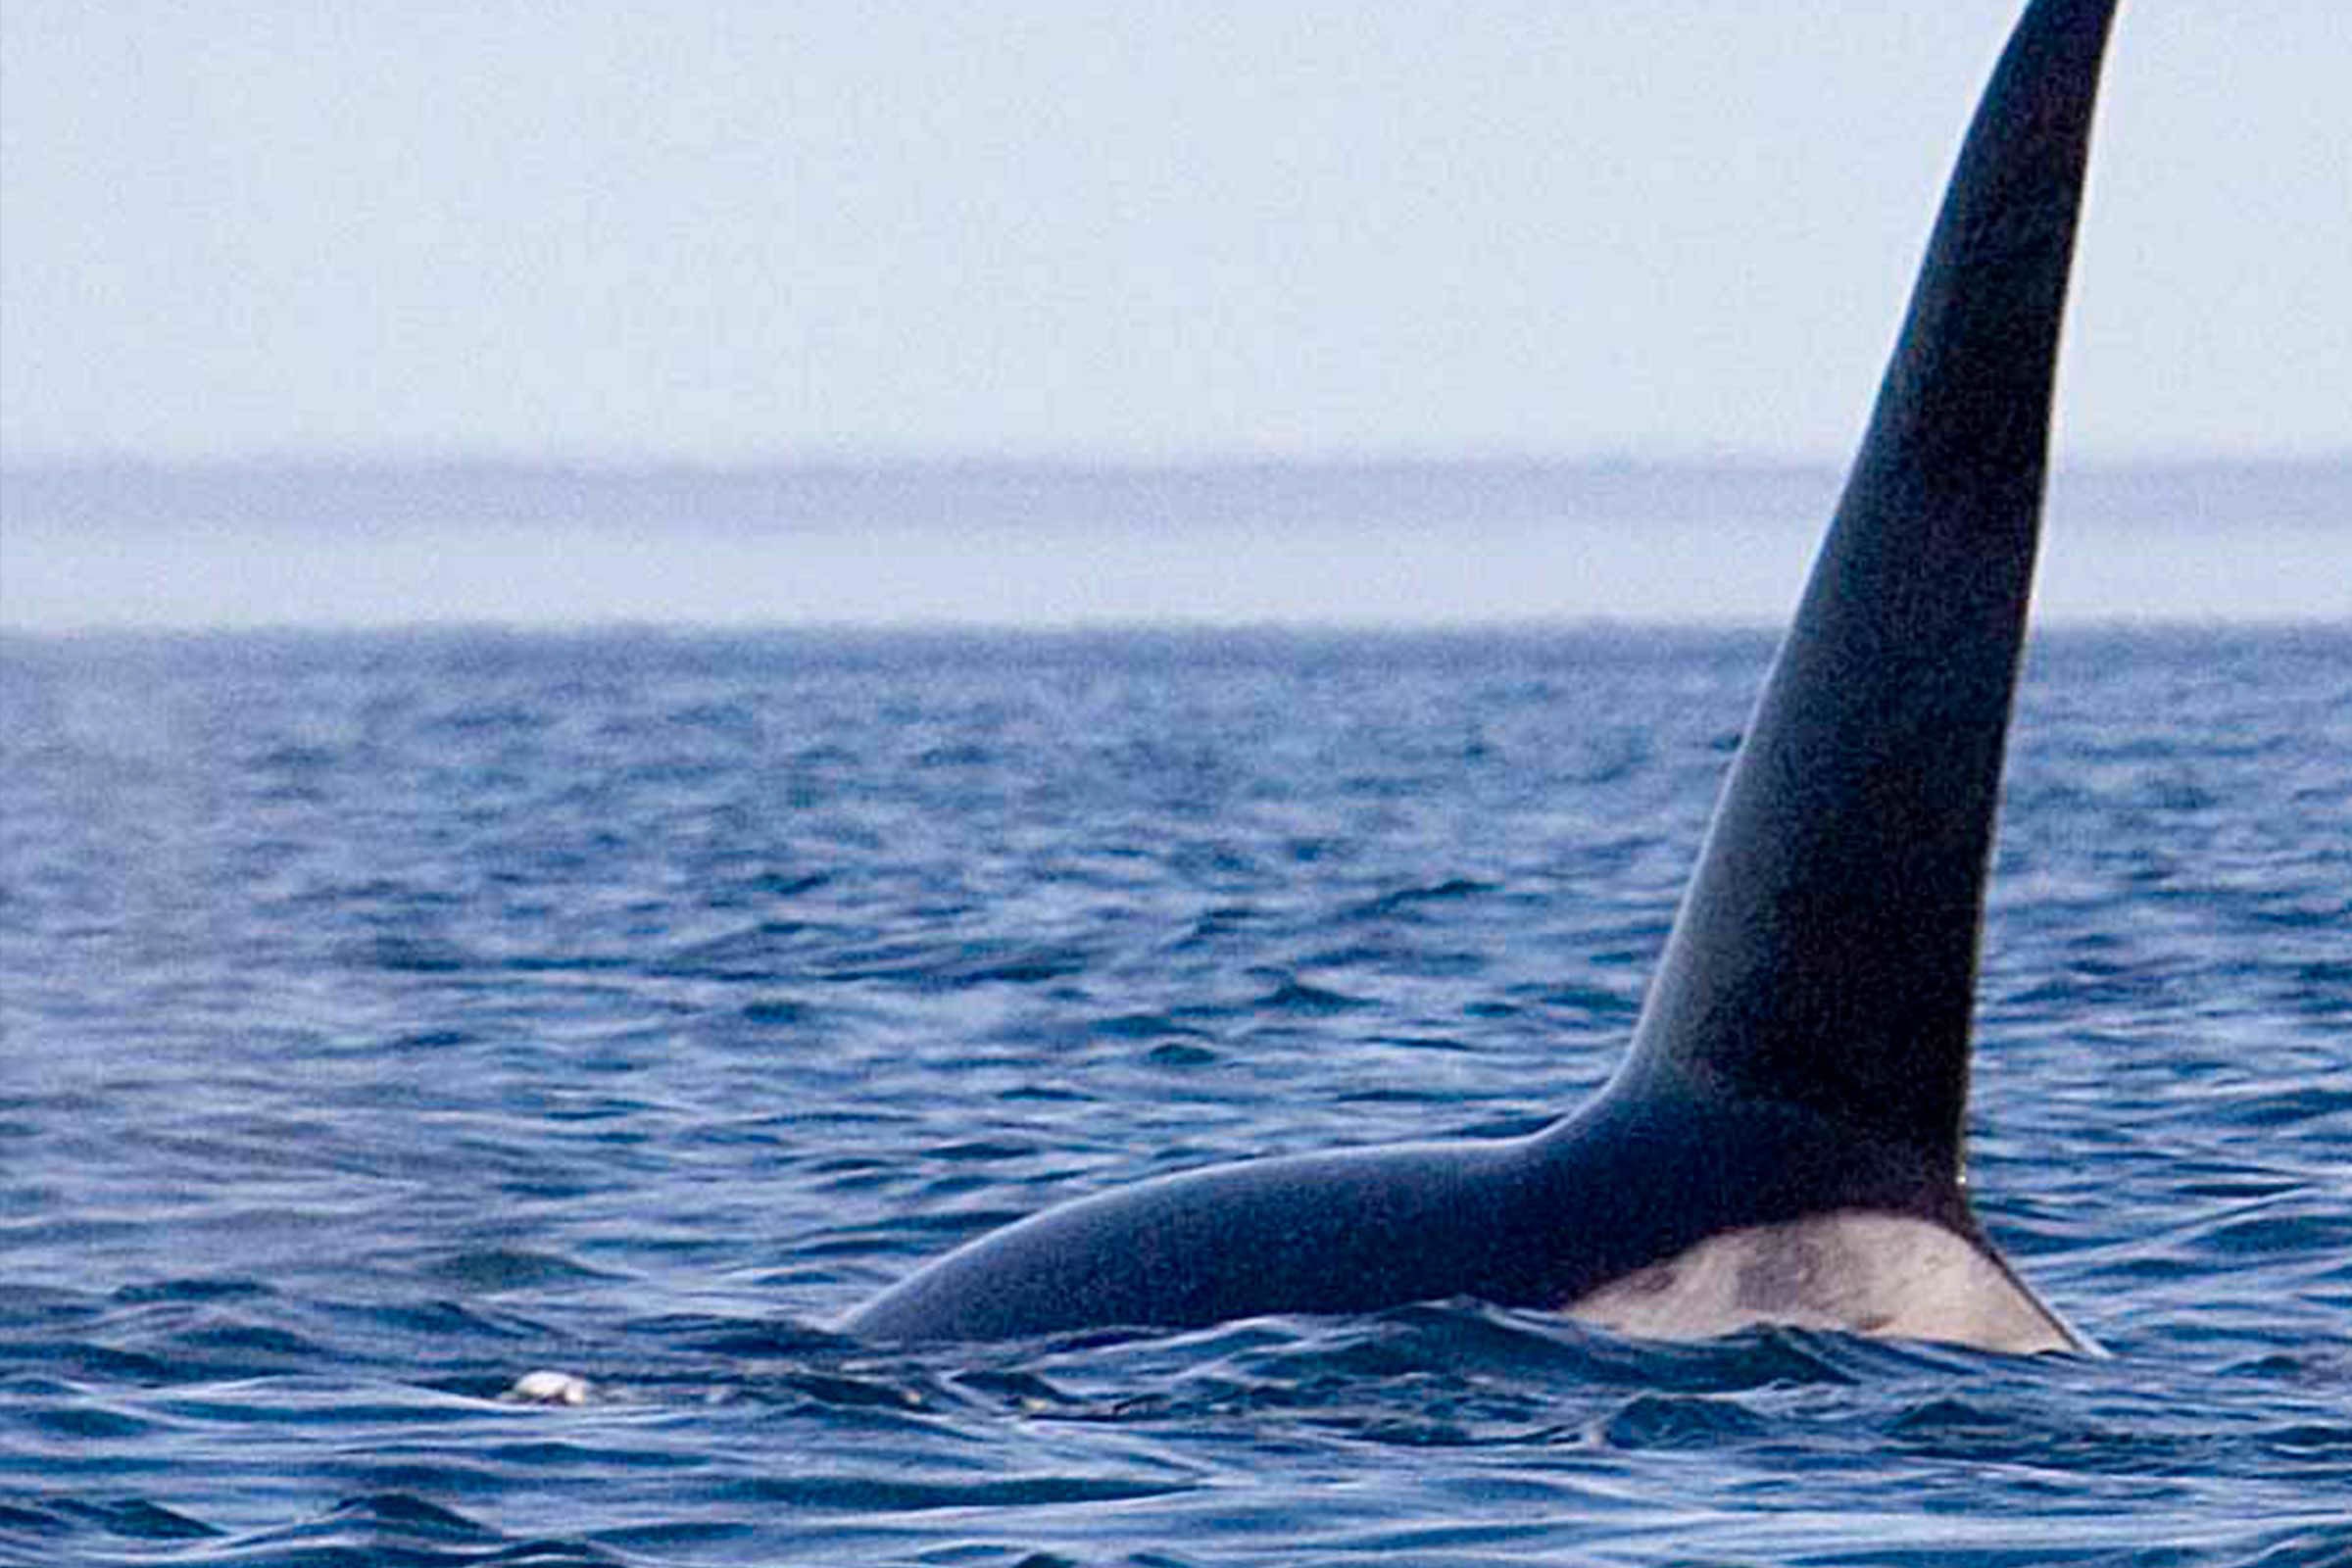 orca01.jpg